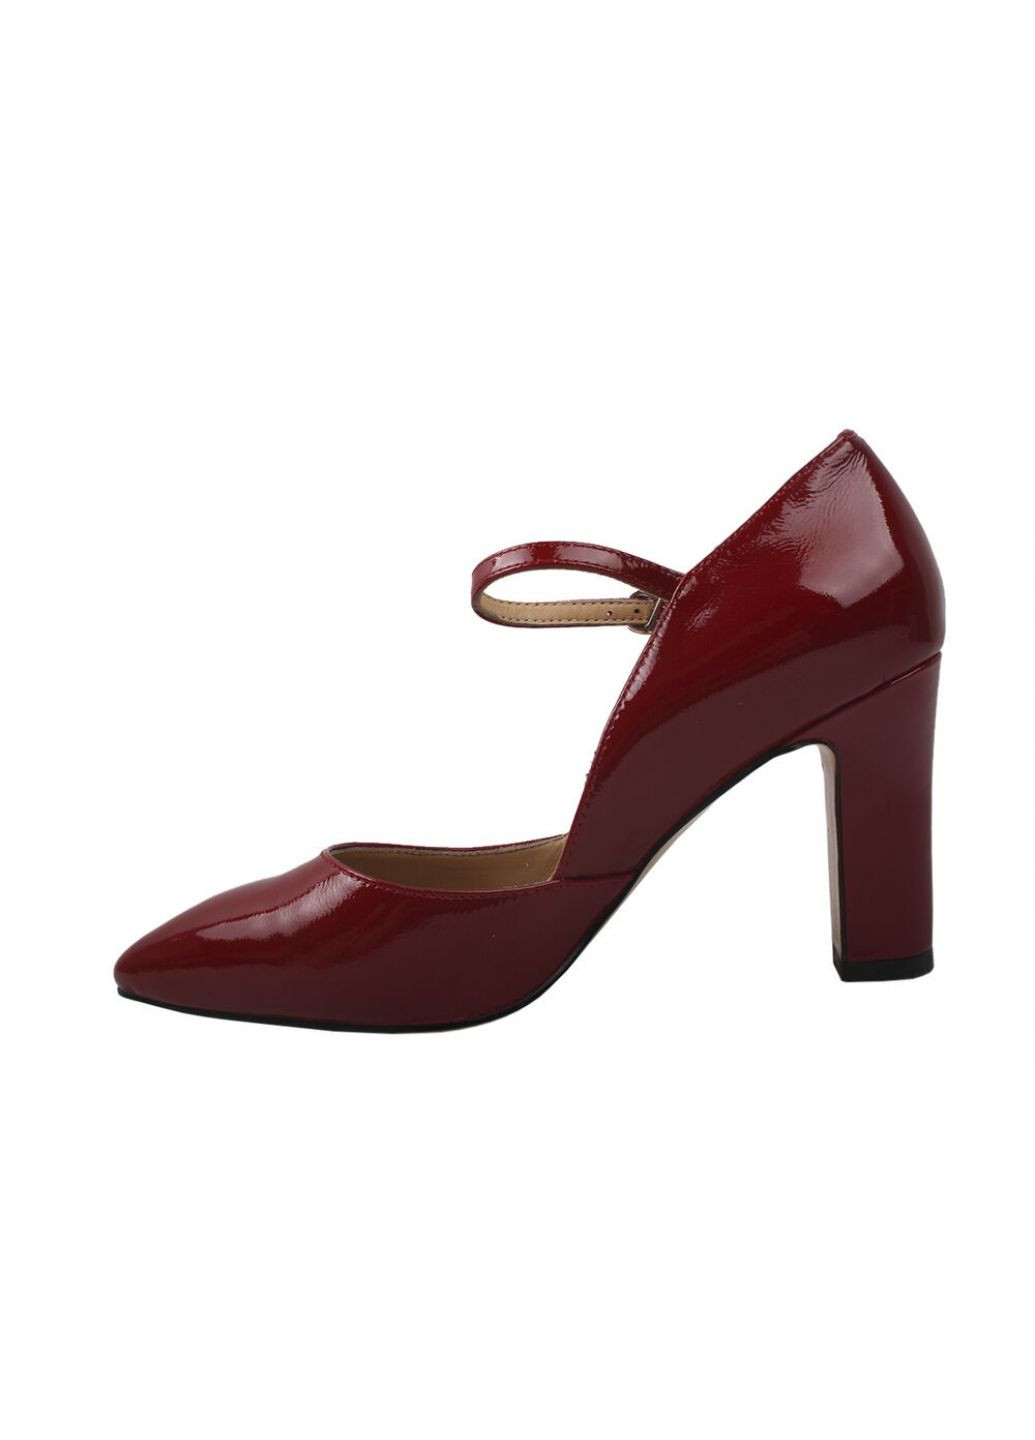 Туфлі жіночі з натуральної лакової шкіри, на великому каблуці, червоні, Angelo Vani 110-9dt (257426236)